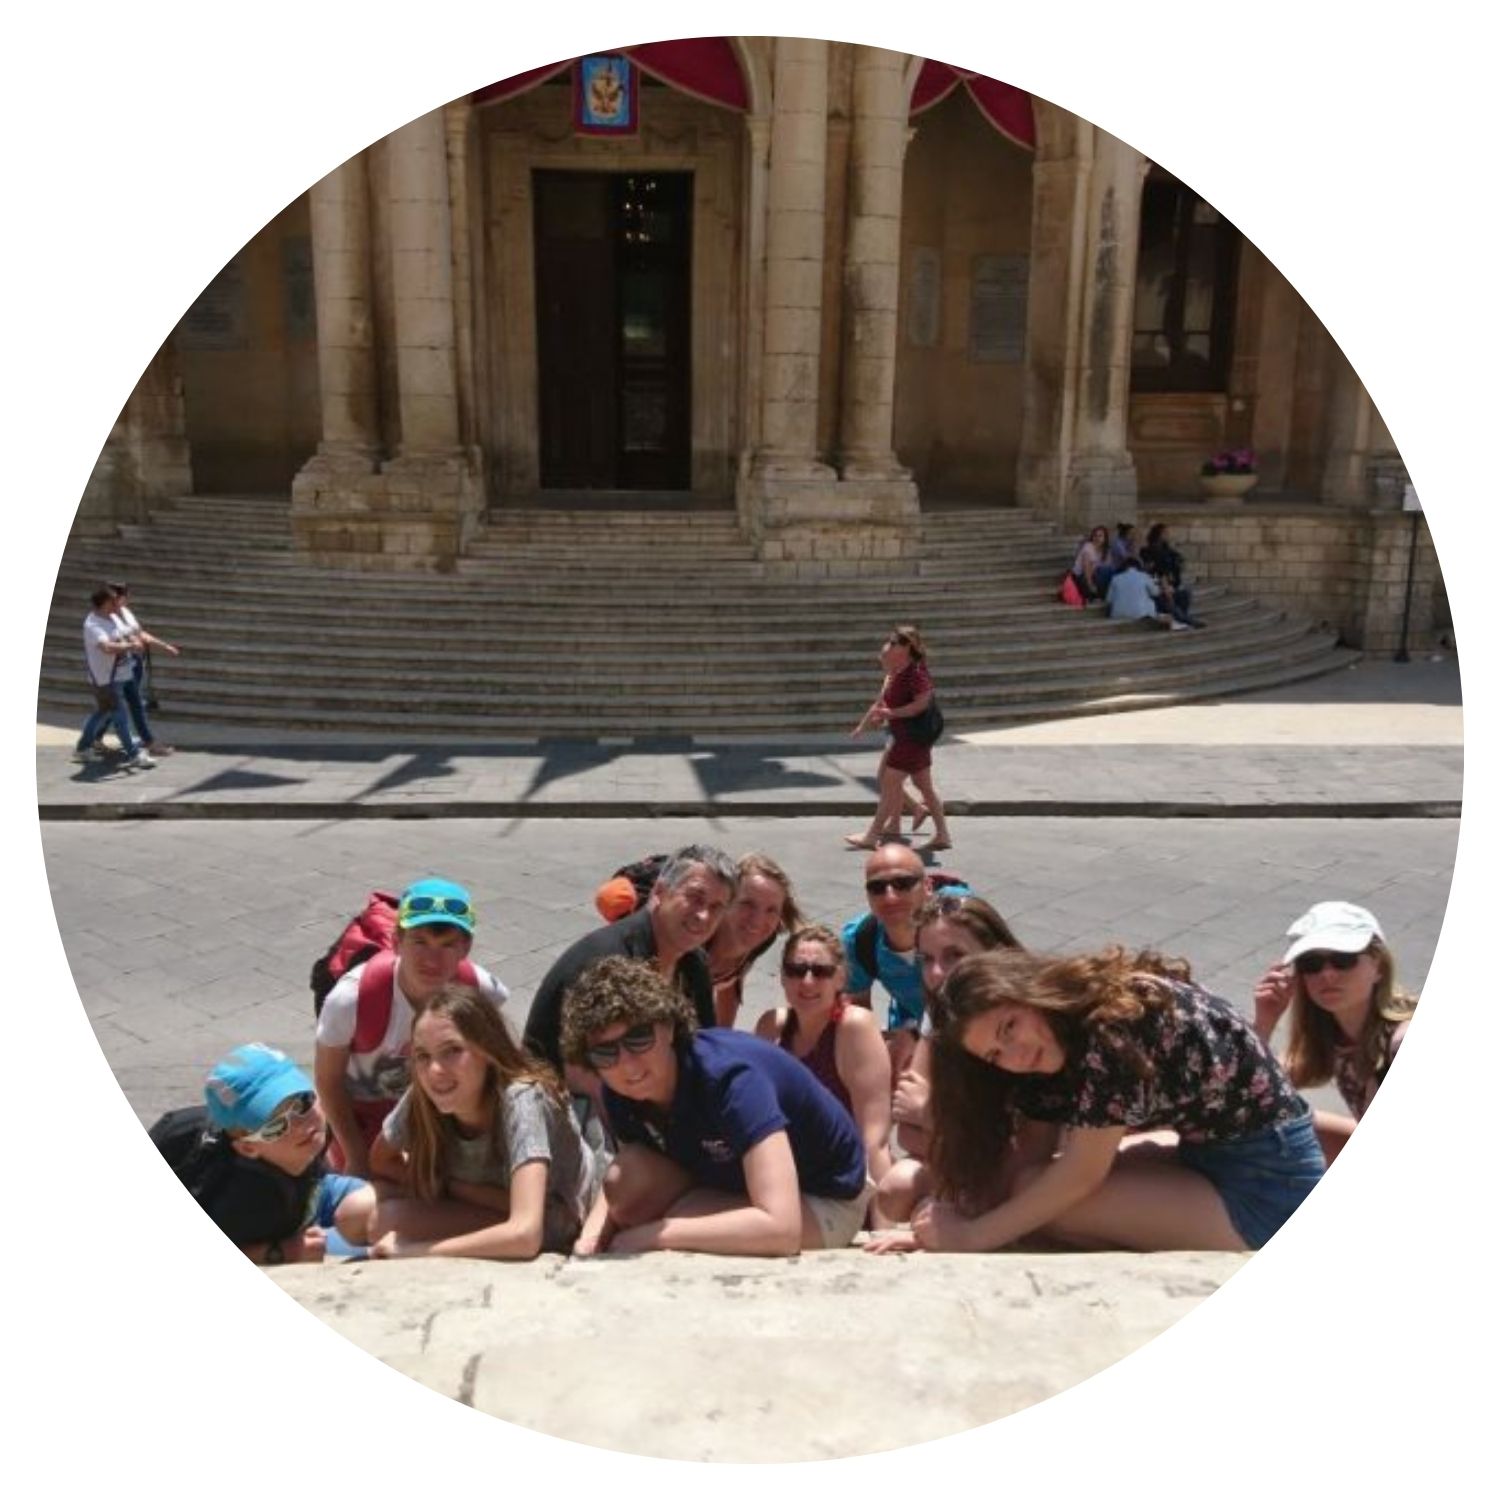 Un groupe de jeunes voyageurs en Italie prend une photo joyeuse devant un bâtiment emblématique, capturant l'enthousiasme et la camaraderie de leur voyage sur mesure.